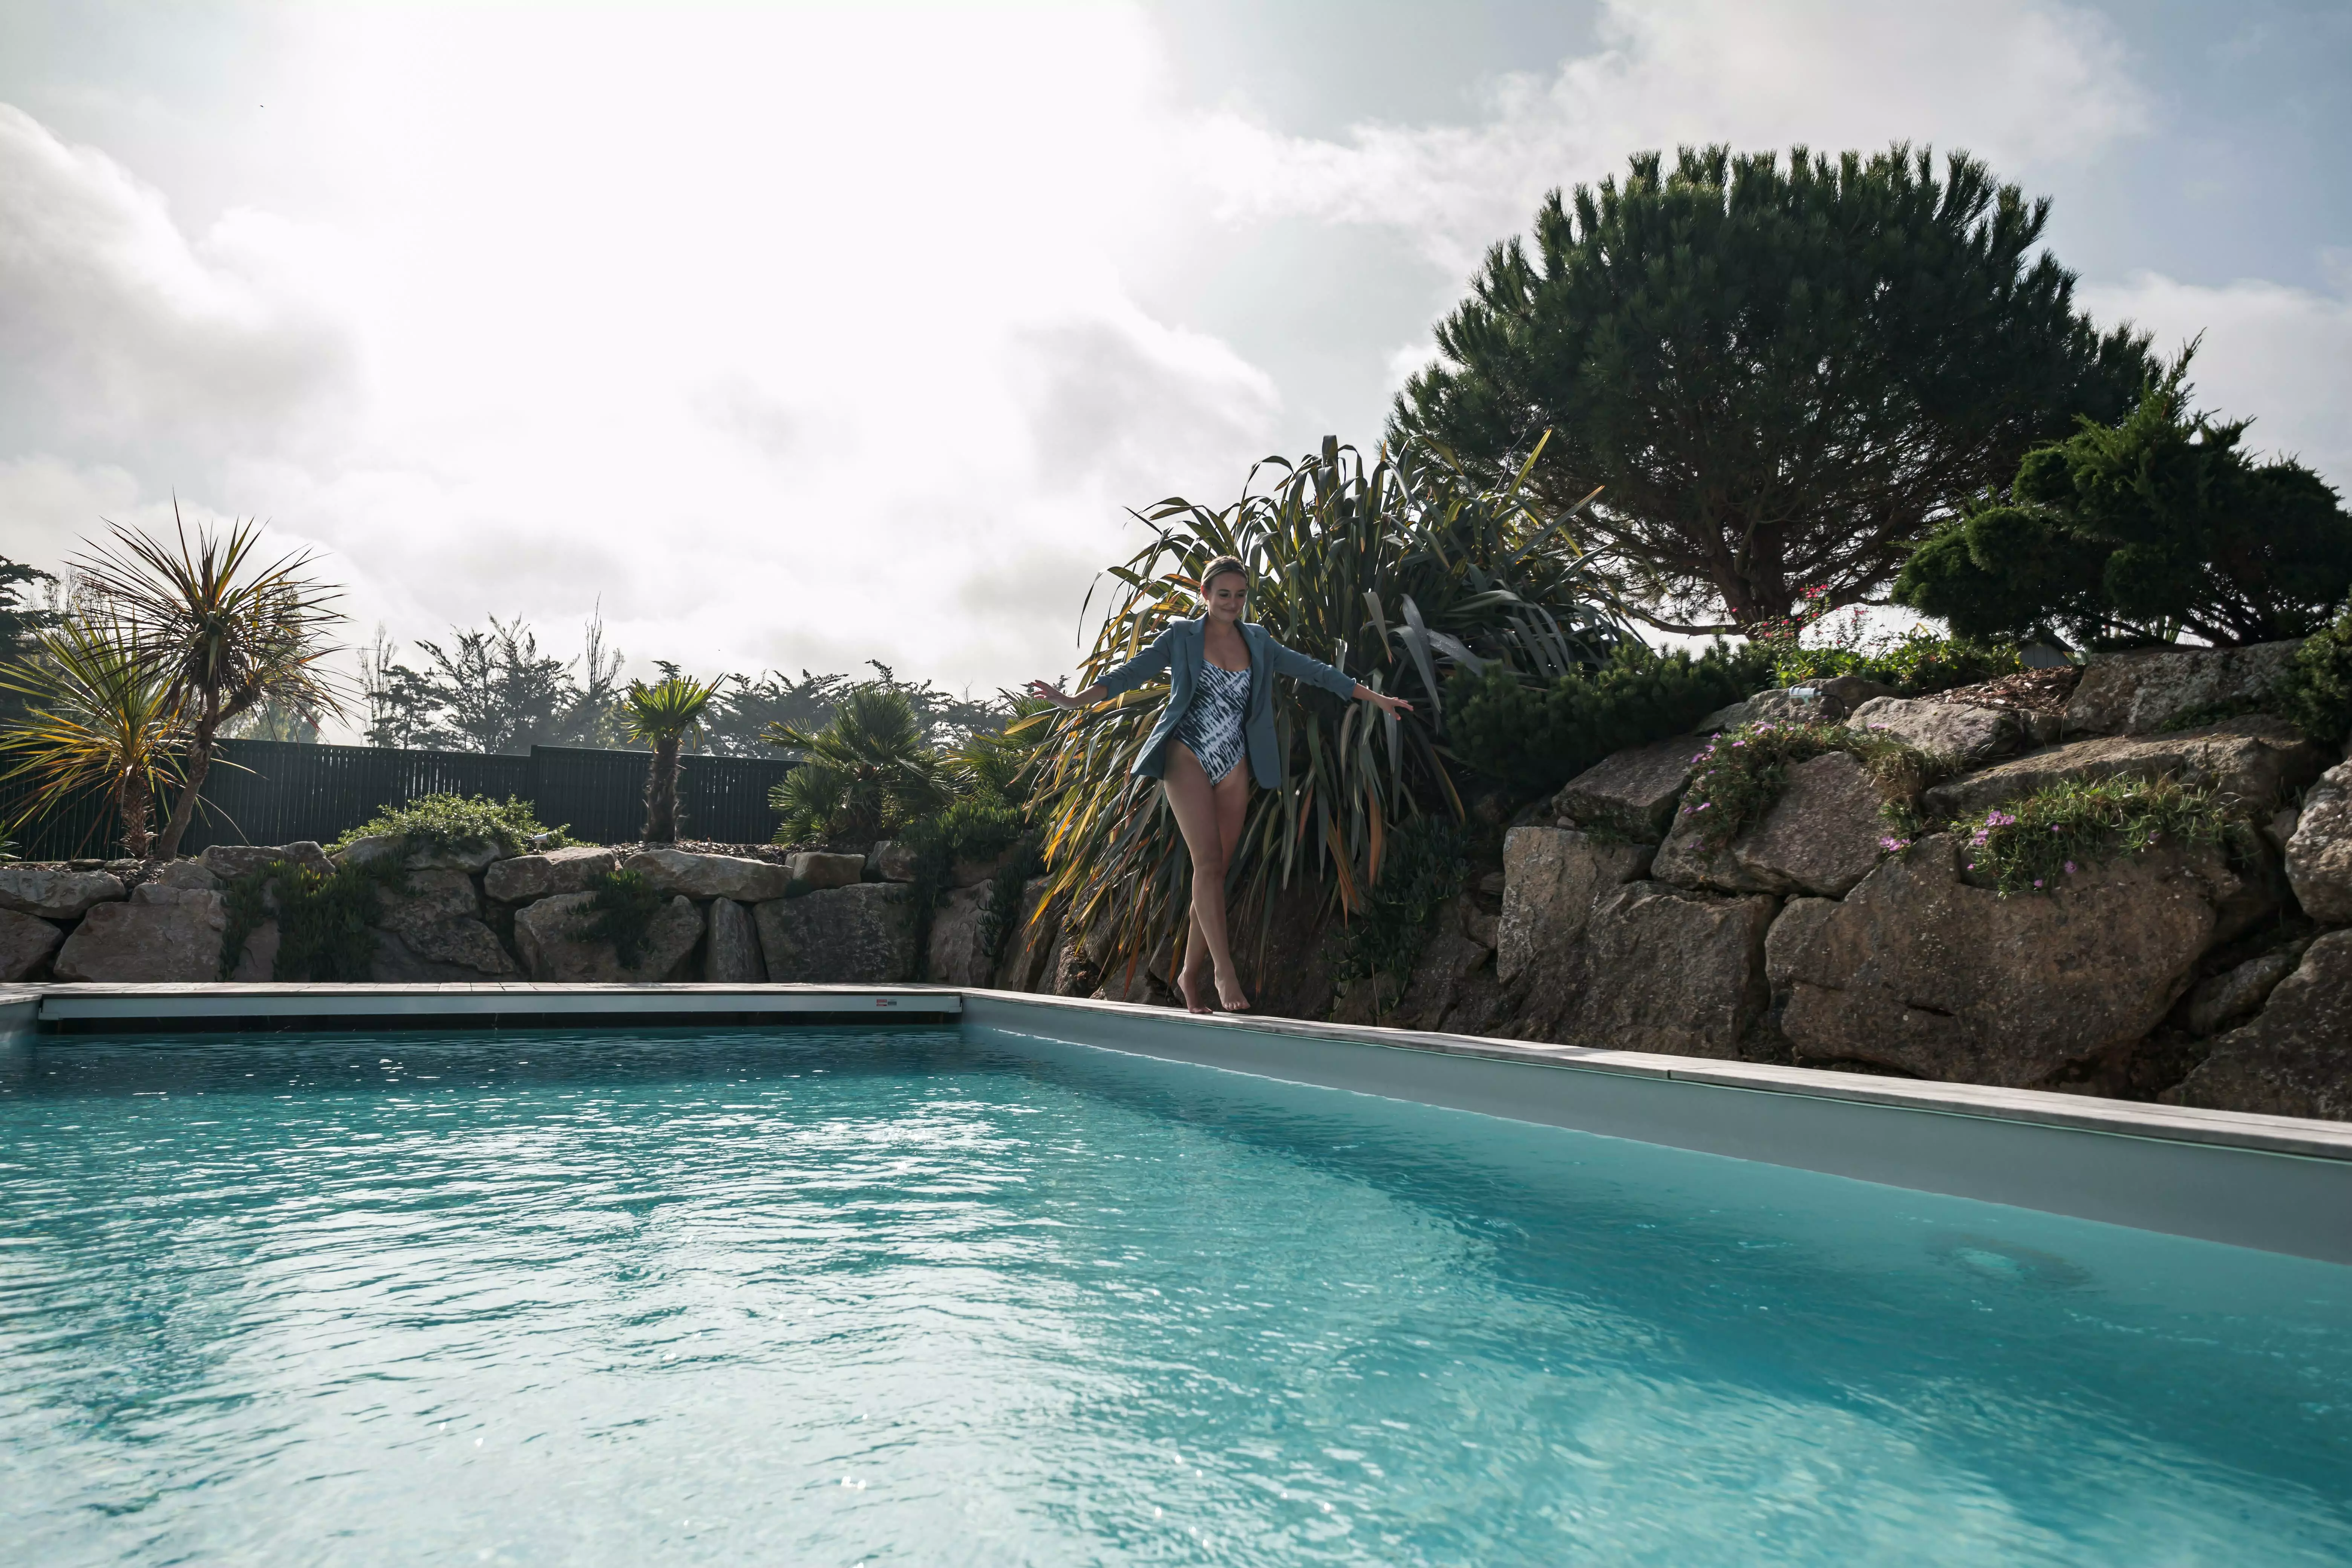 Une maison d'aujourd'hui, avec la piscine en son centre, juxtaposée à un ensemble rocheux par une terrasse, et agrémentée de flore exotique.